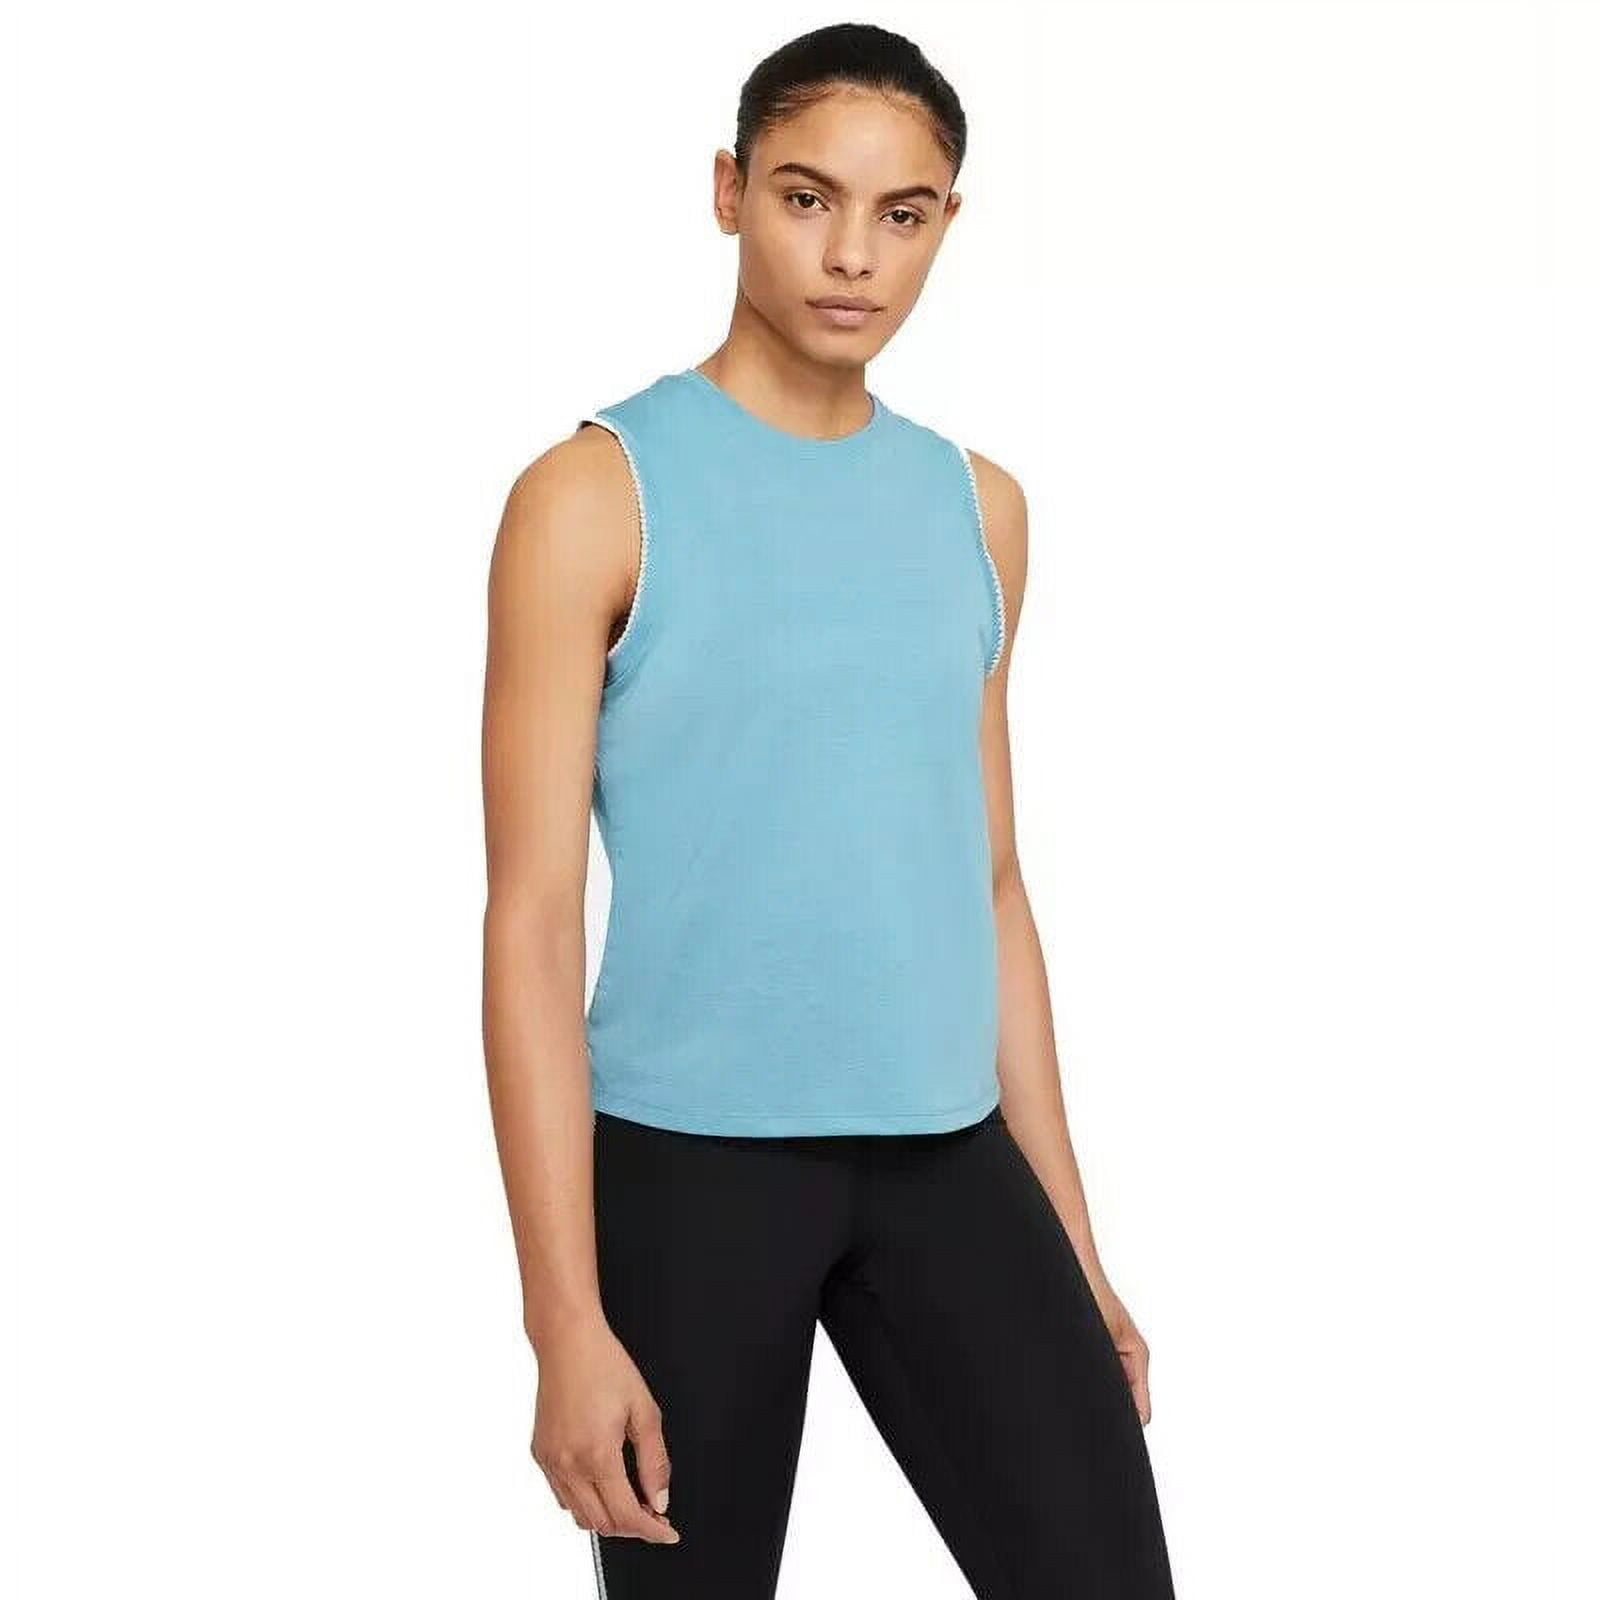 Nike Women's Crochet-Trimmed Yoga Tank Top Blue Size XS MSRP $40